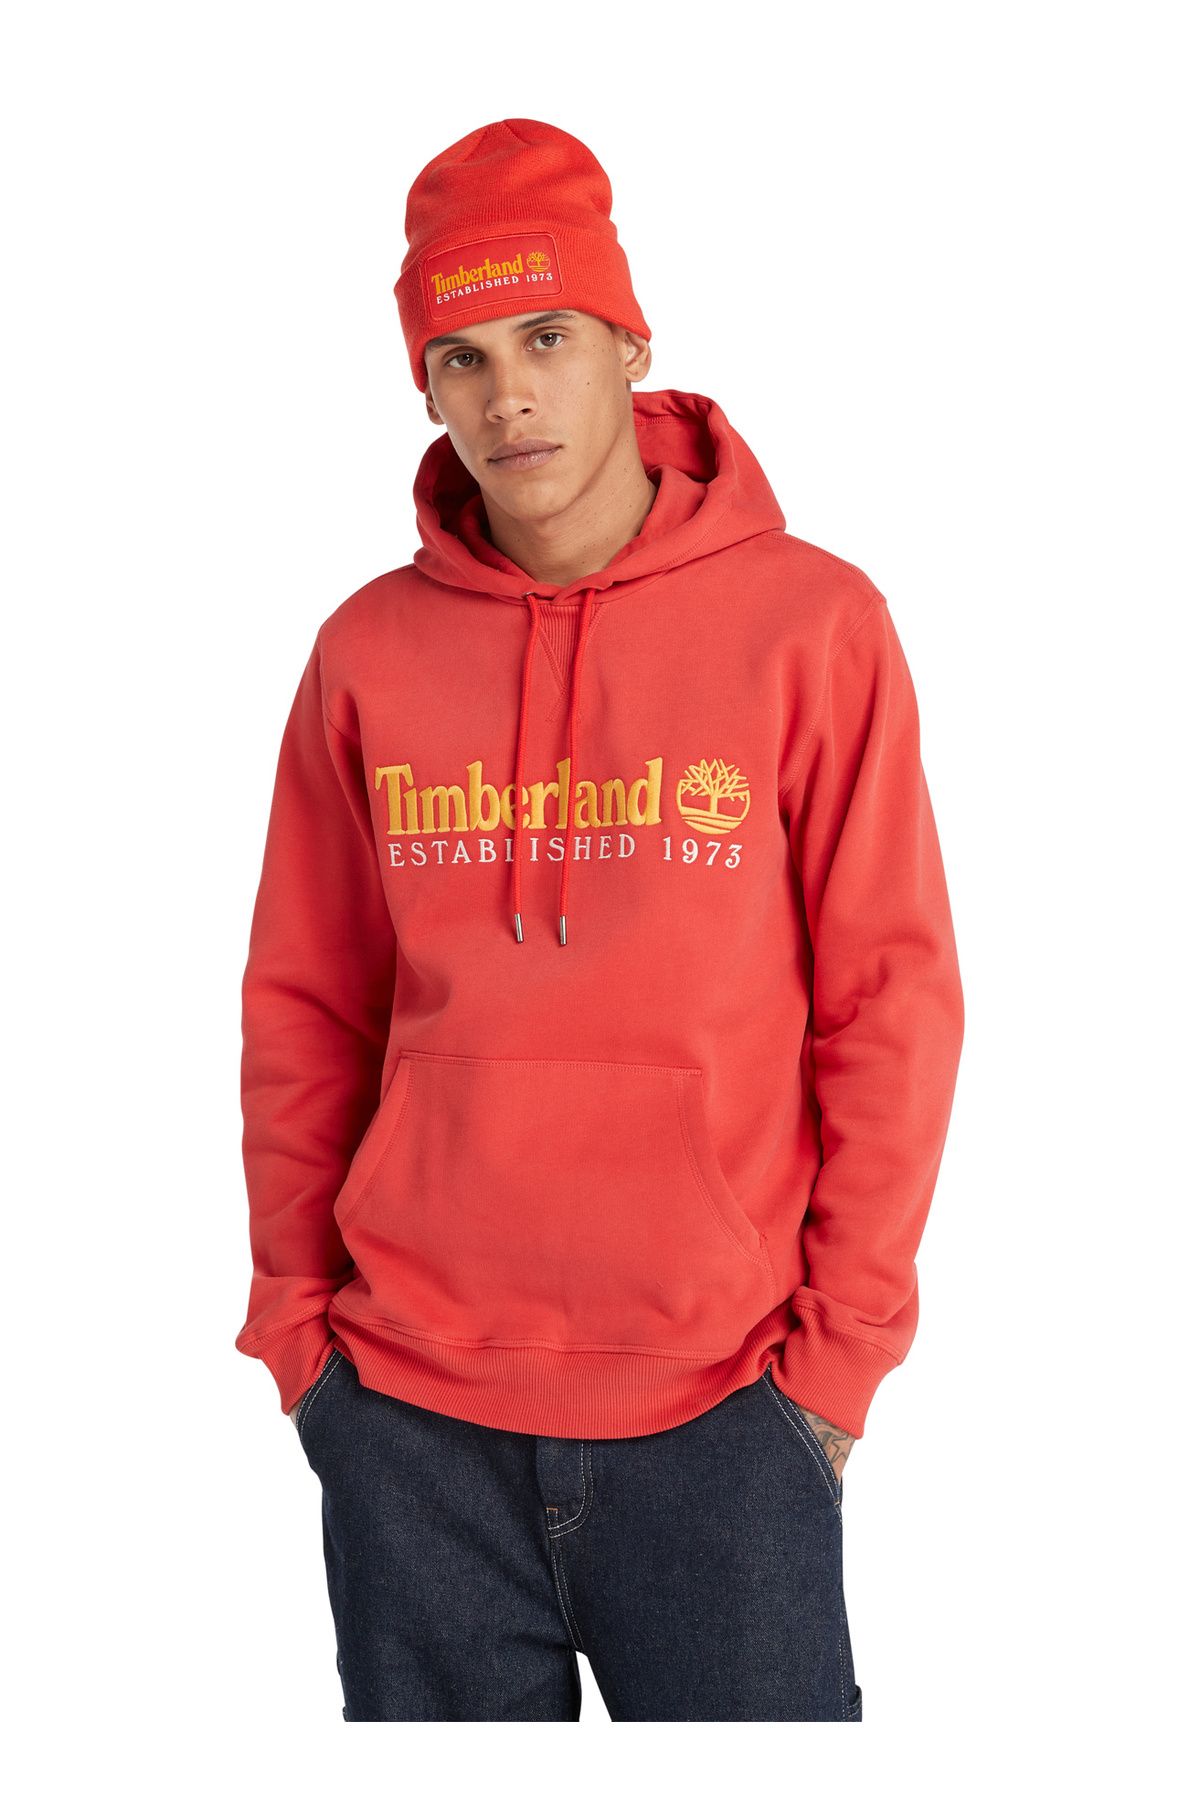 Timberland Sweatshirt, XL, Turuncu